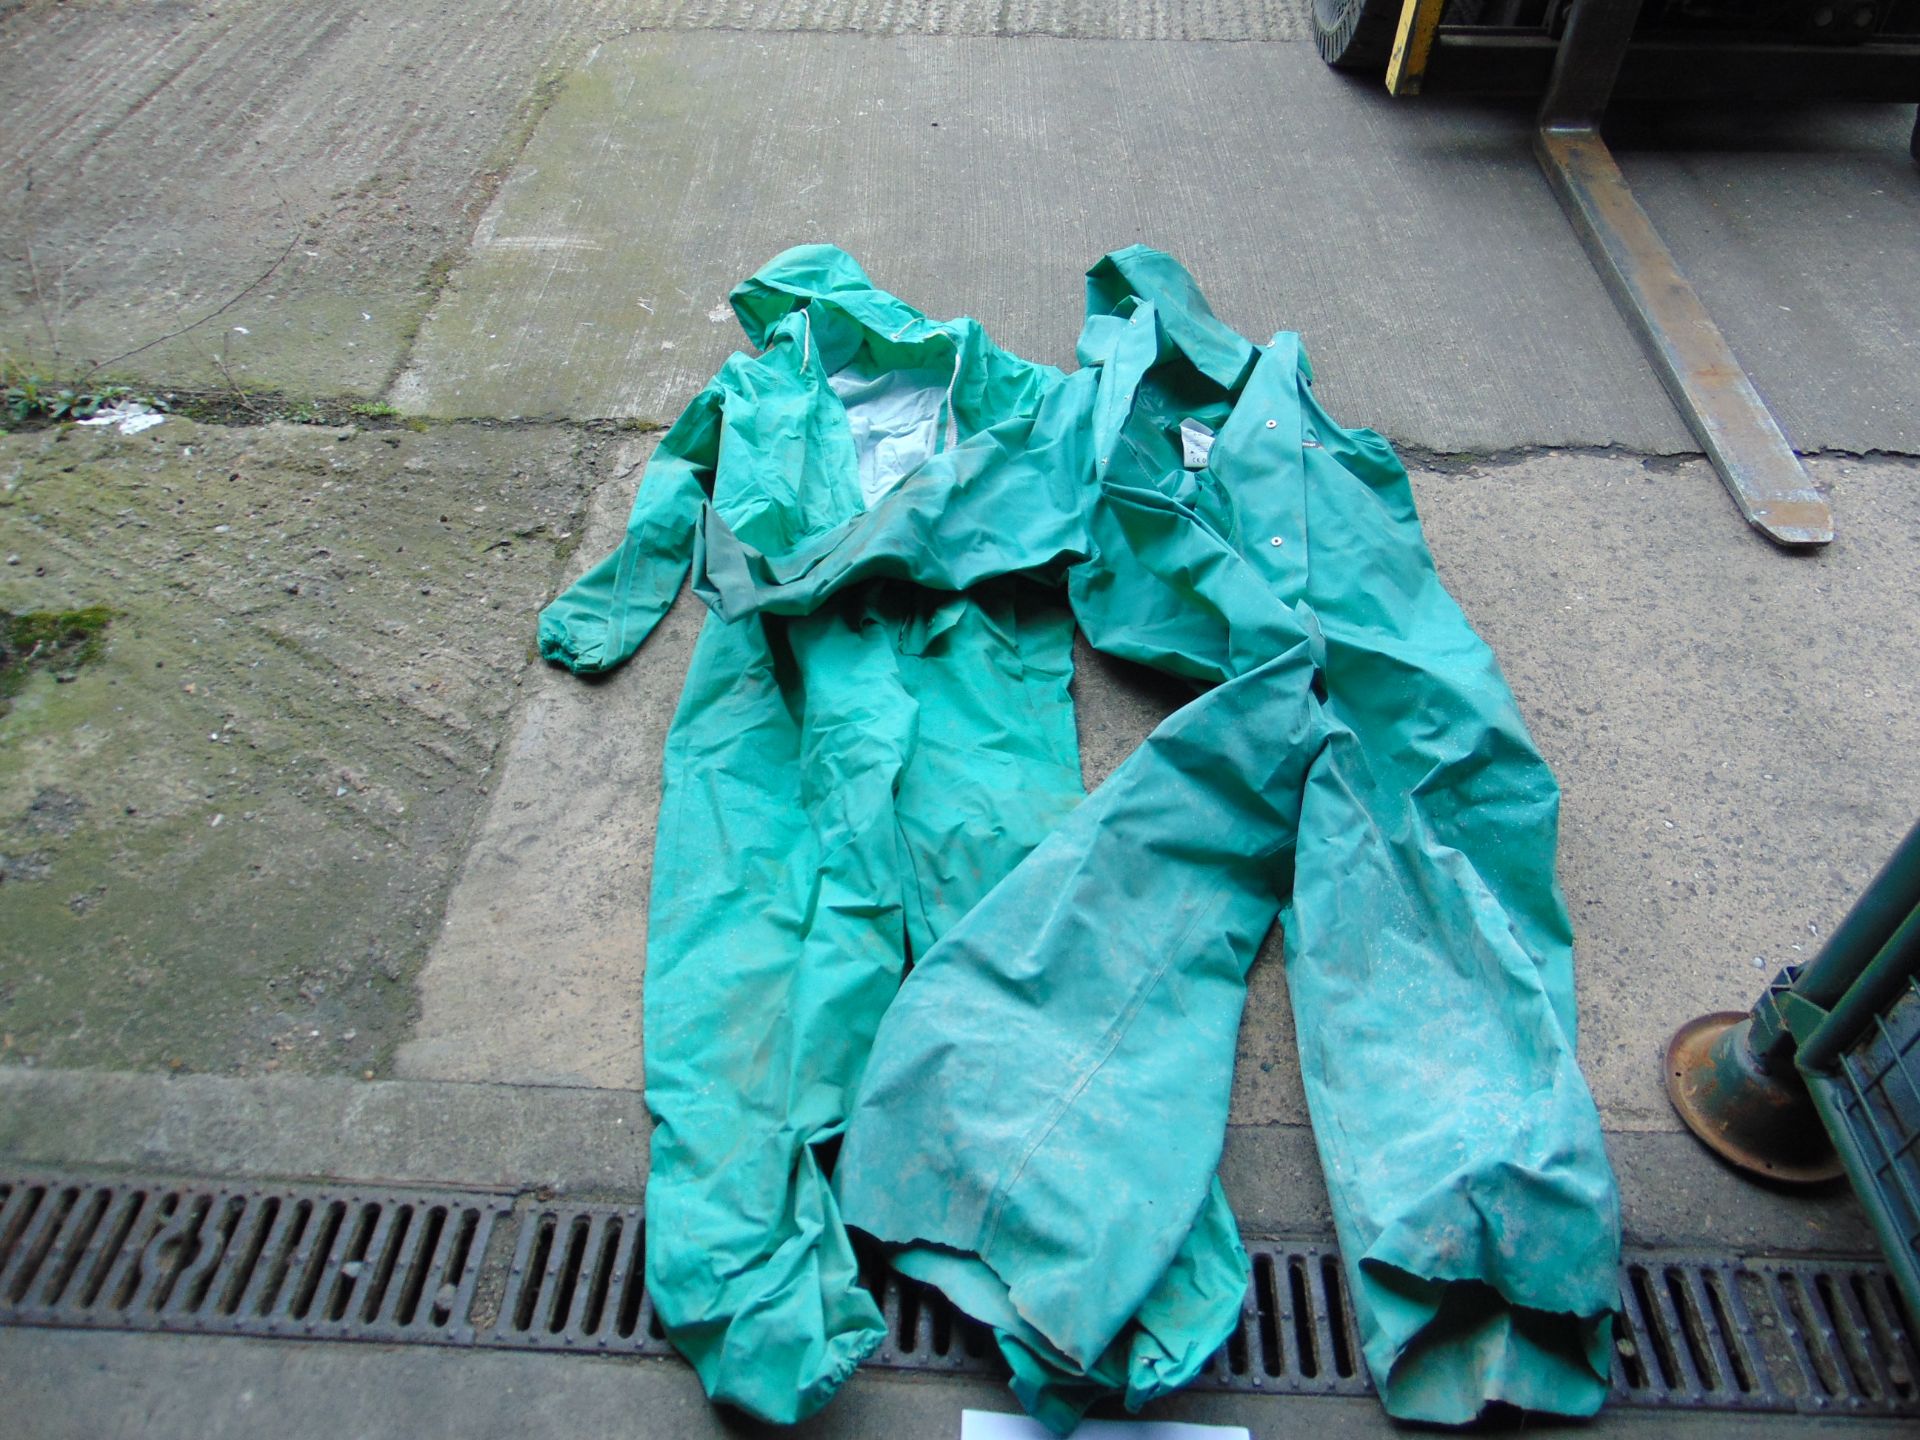 2x Waterproof Pressure wash suits - Image 2 of 4